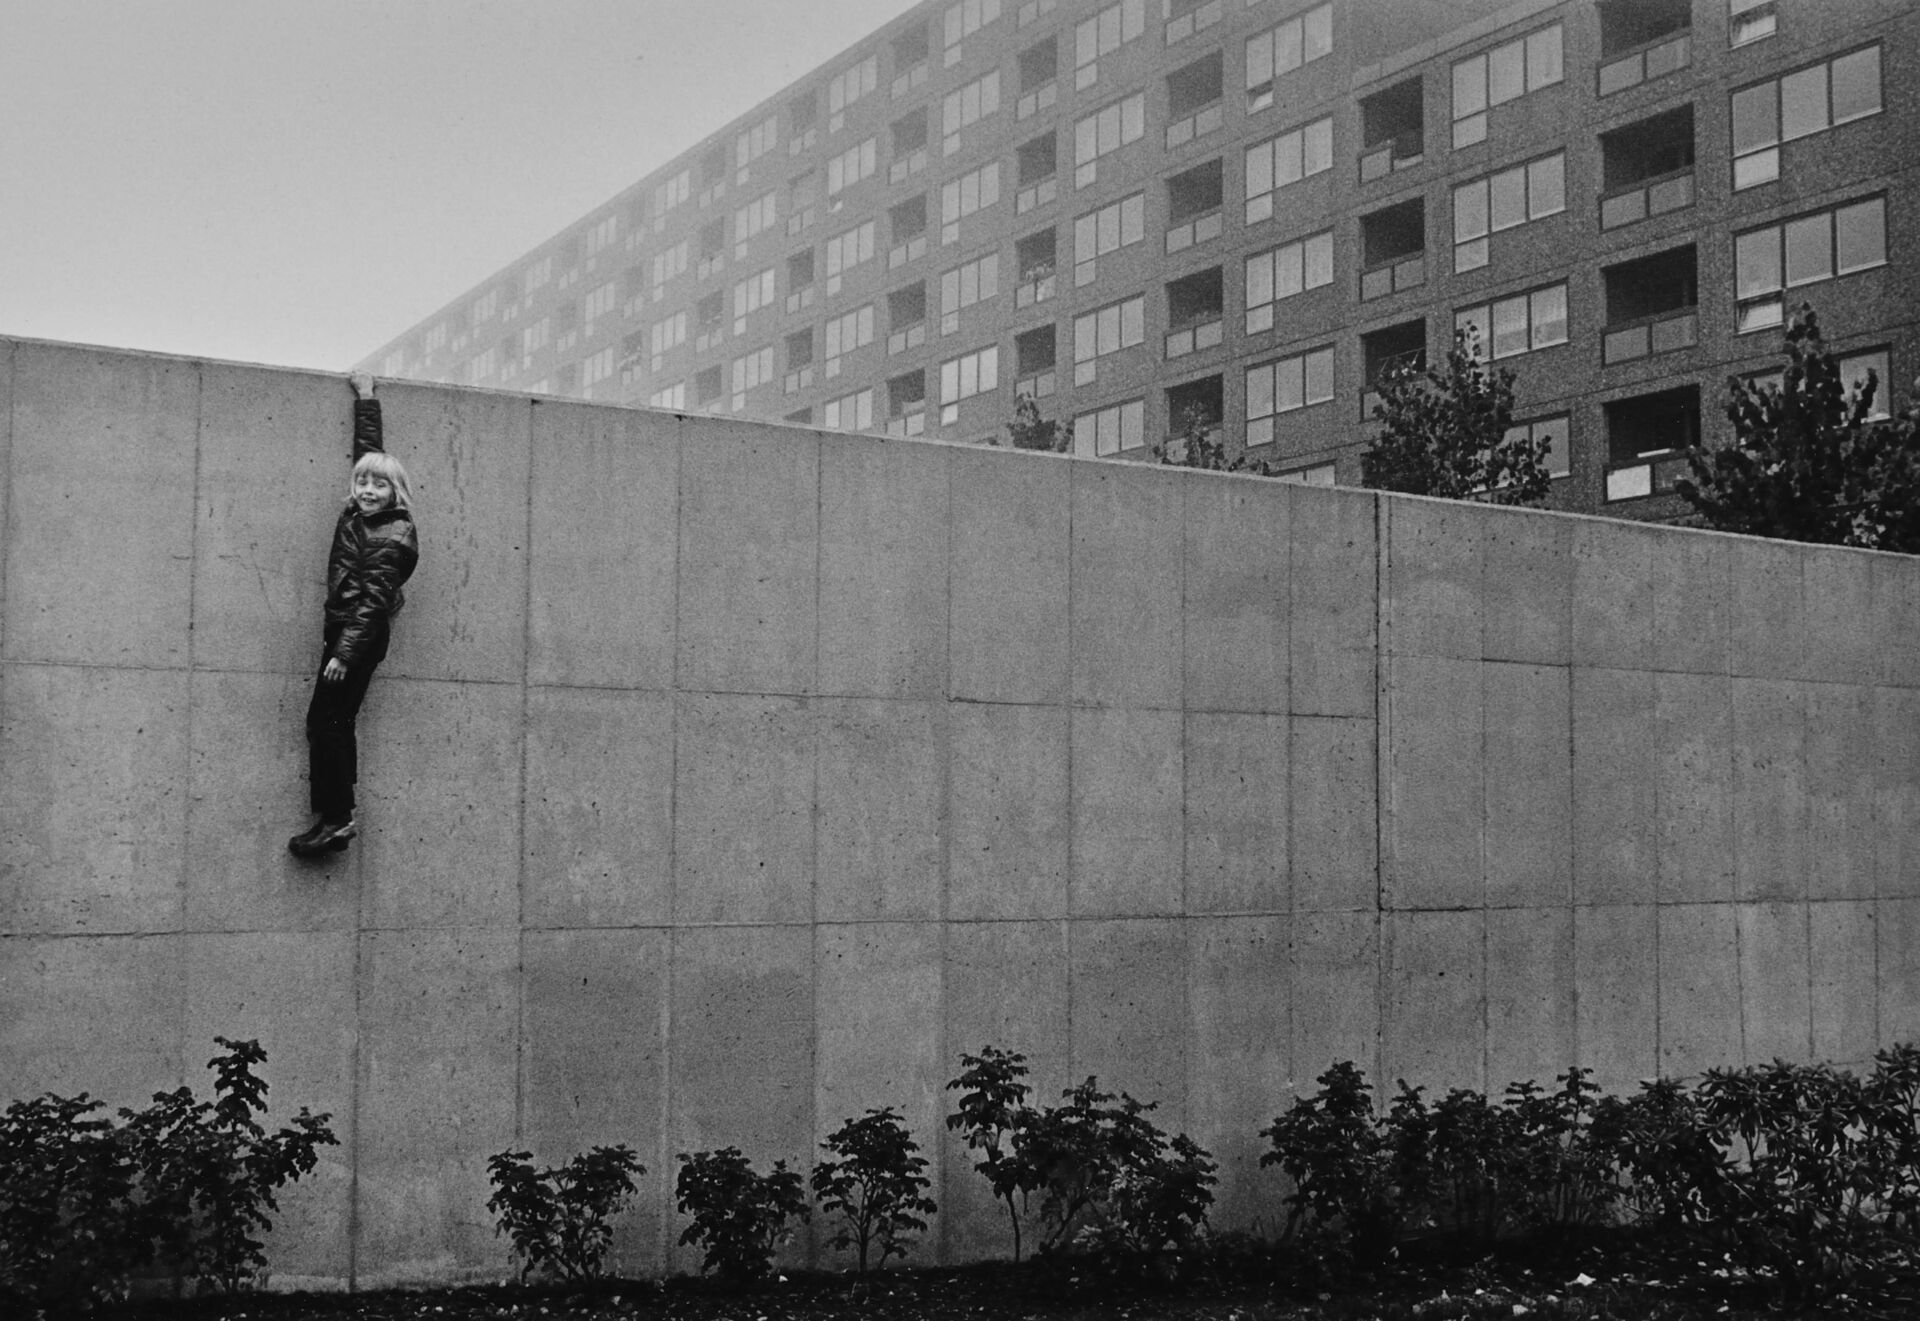 Svartvit bild föreställande en grå betonvägg och höghus i bakgrunden. En pojke hänger med ena handen på väggen.